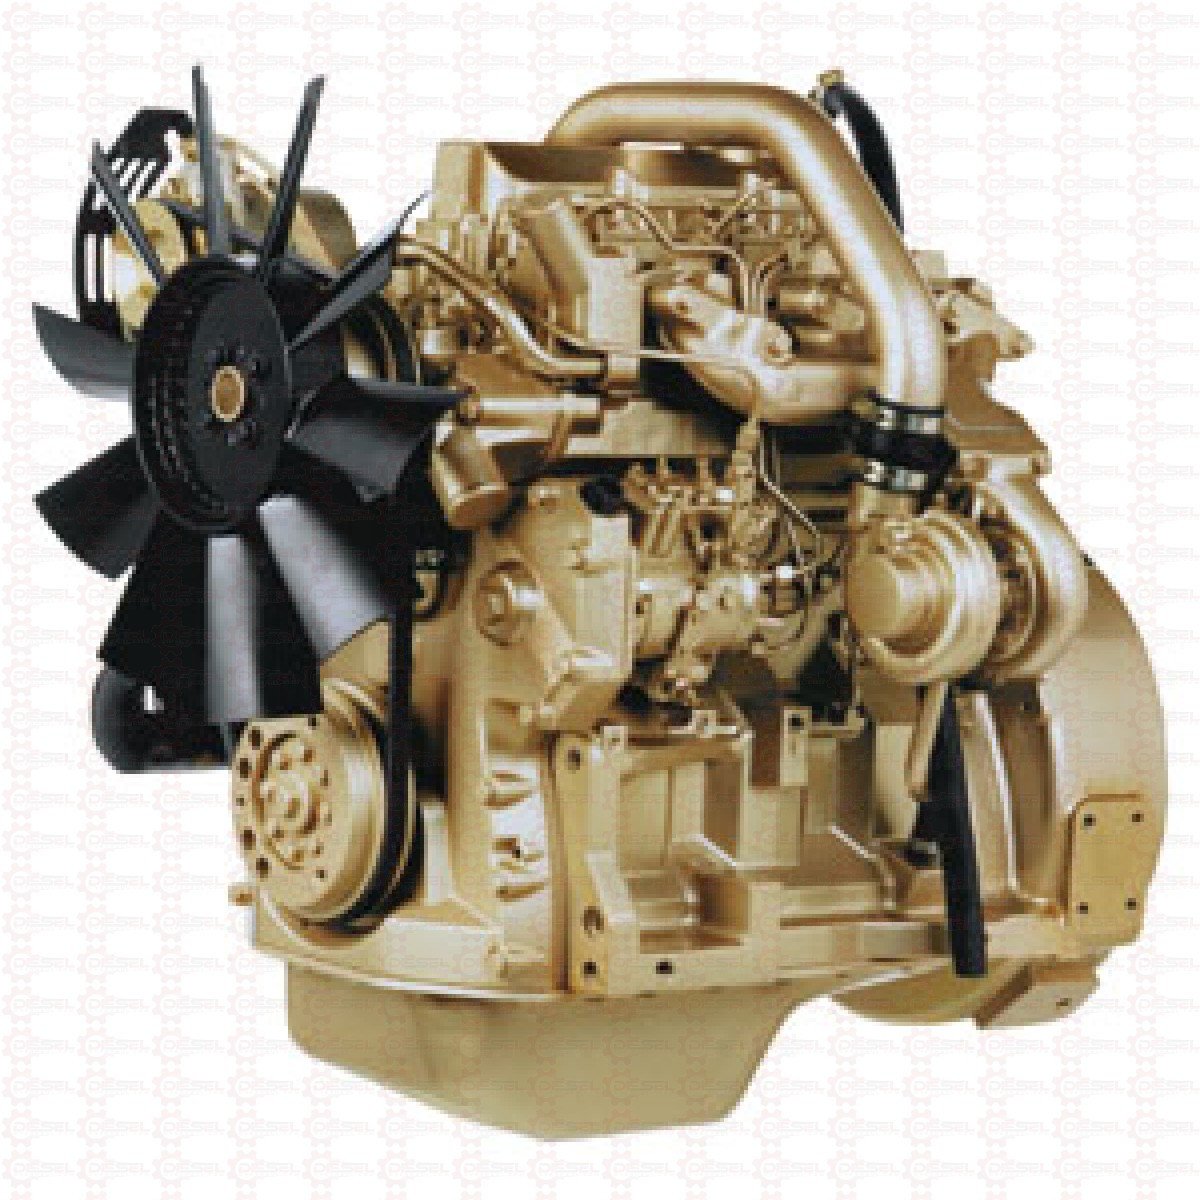 John Deere Series 300 3029 , 4039 , 4045 , 6059 And 6068 OEM Diesel Engines Operation & Service Manual